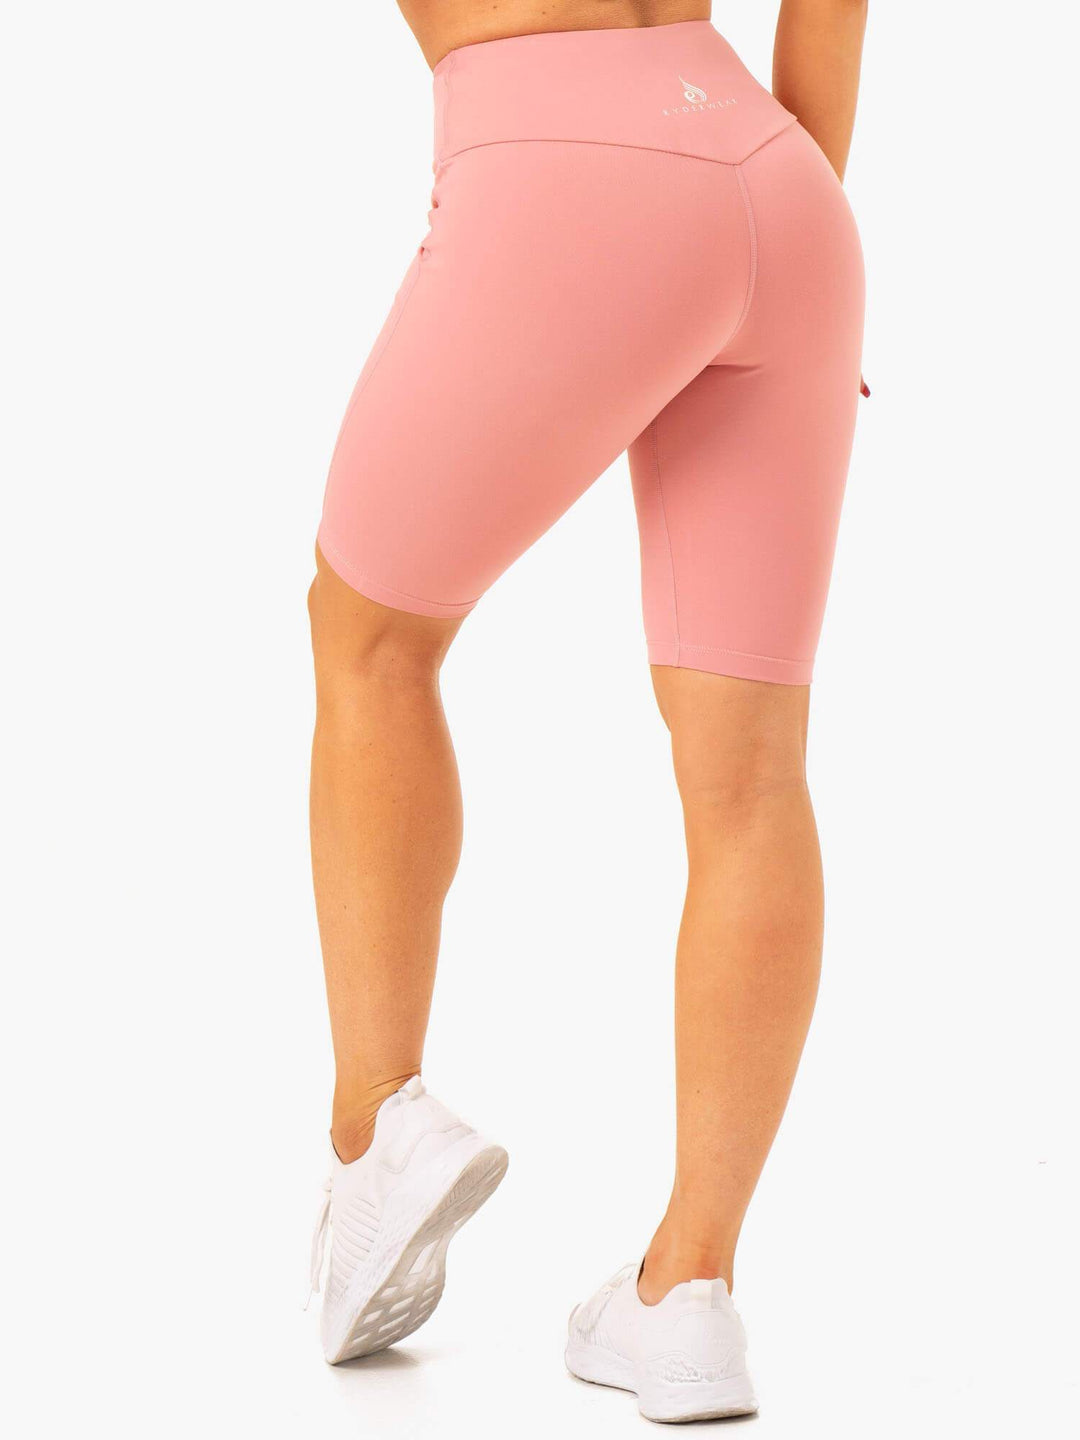 Action Bike Short - Blush Pink Clothing Ryderwear 